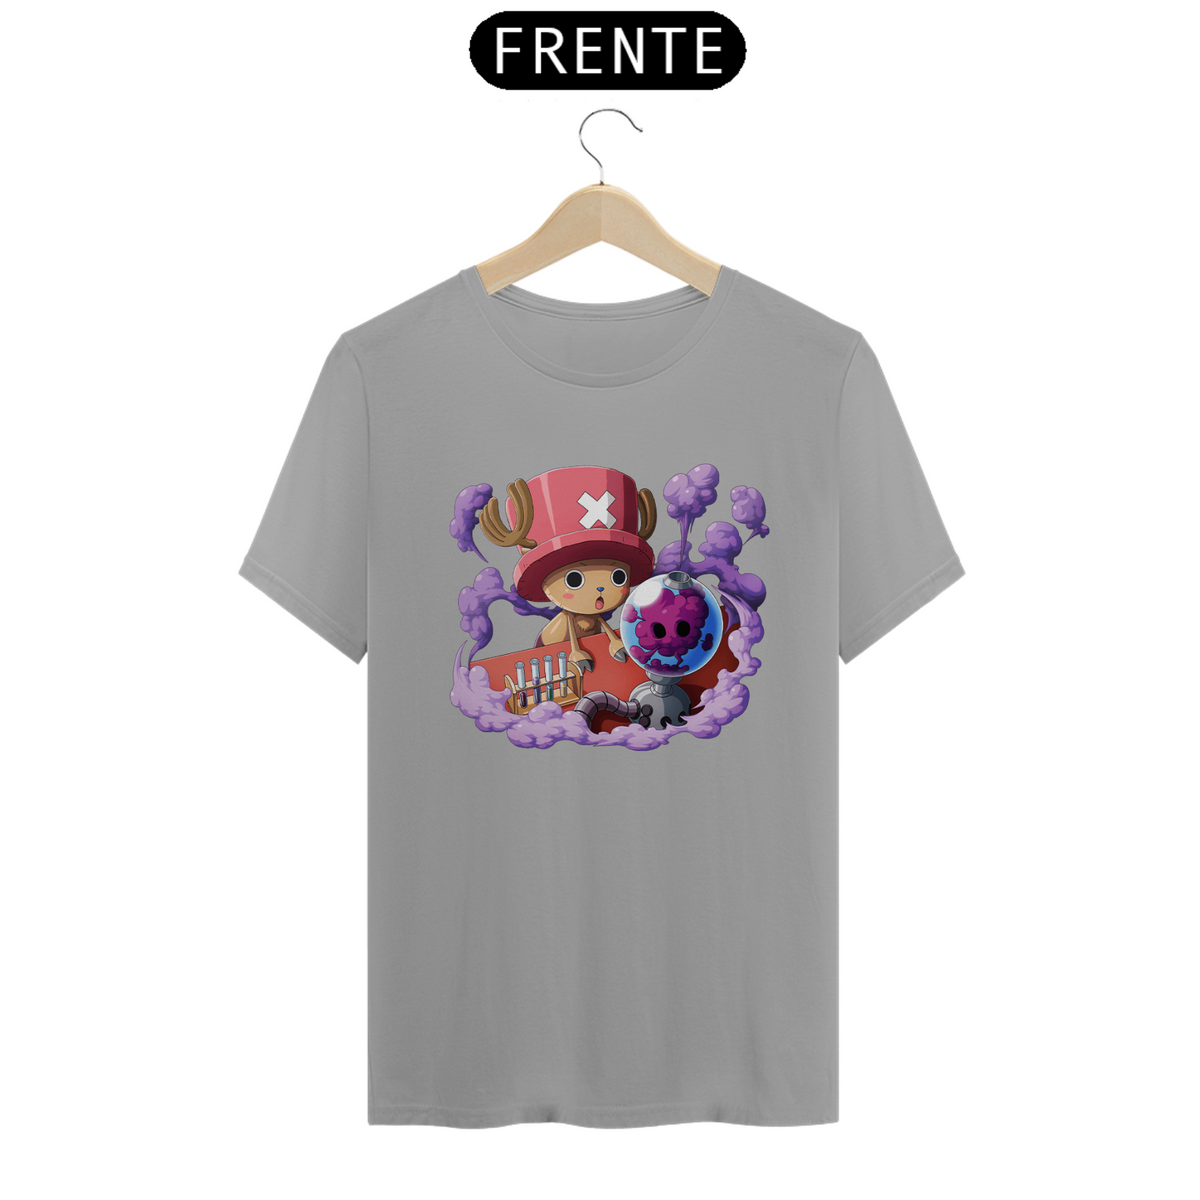 Nome do produto: Camiseta Tony Tony Chopper - One Piece